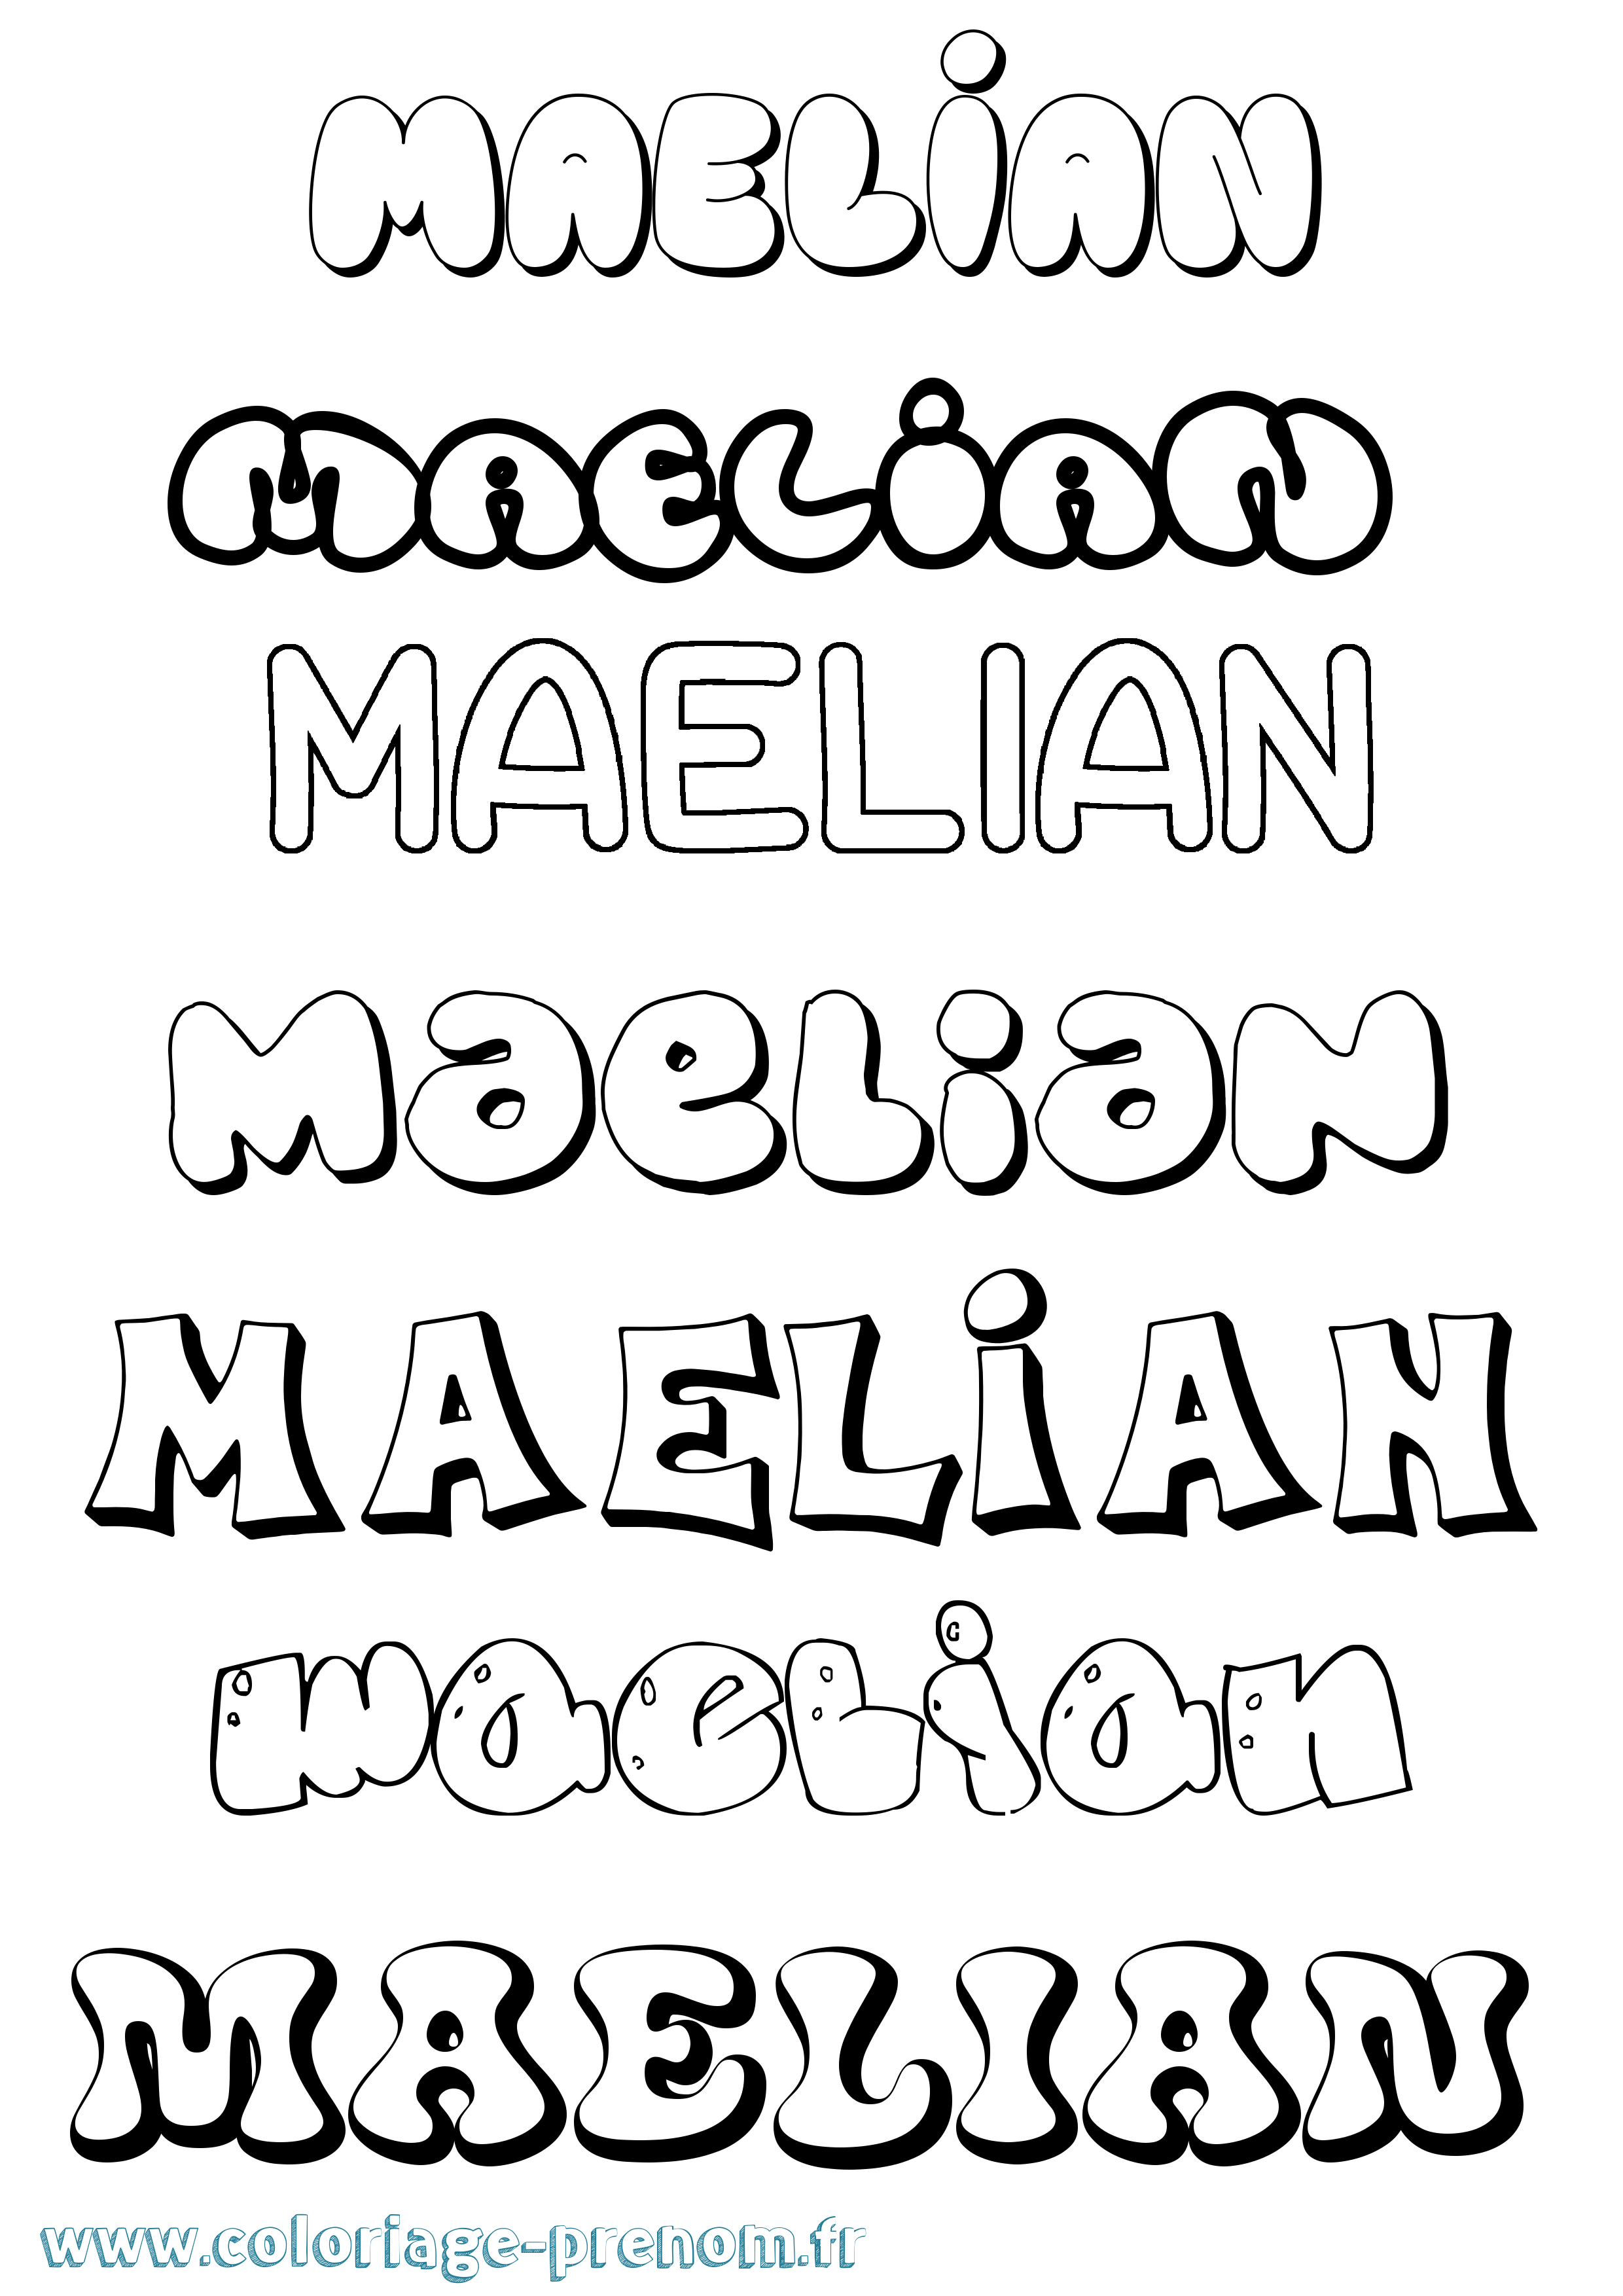 Coloriage prénom Maelian Bubble